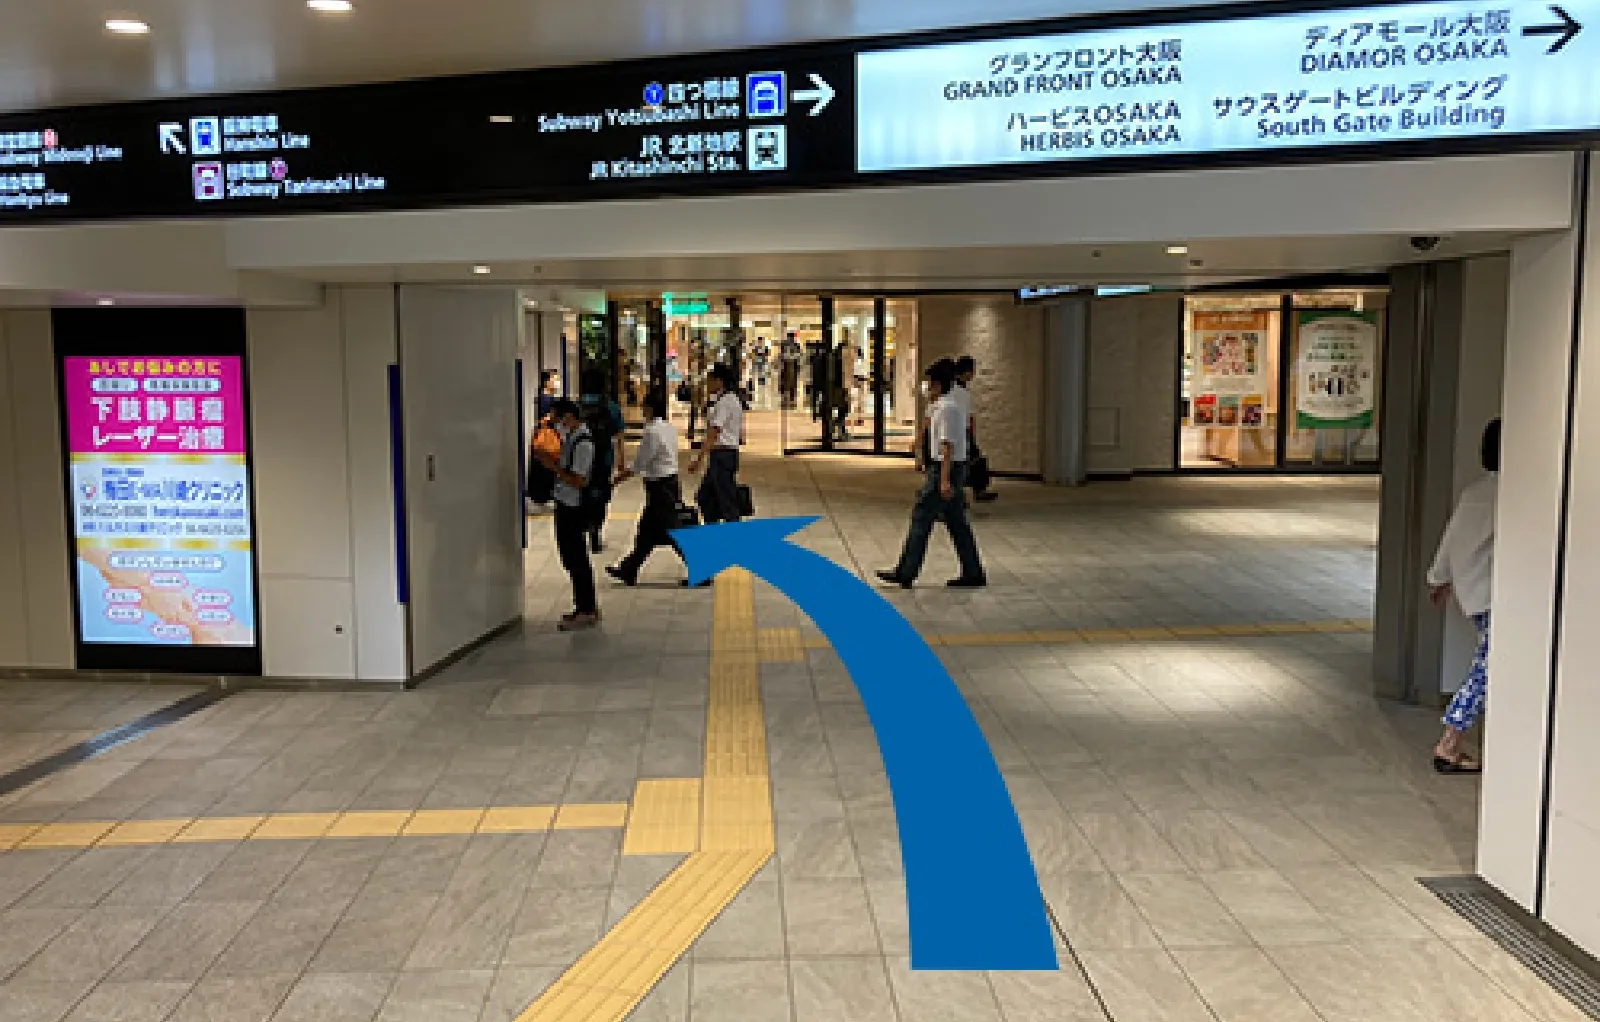 階段を降りて、阪神百貨店を右手に進んでください。